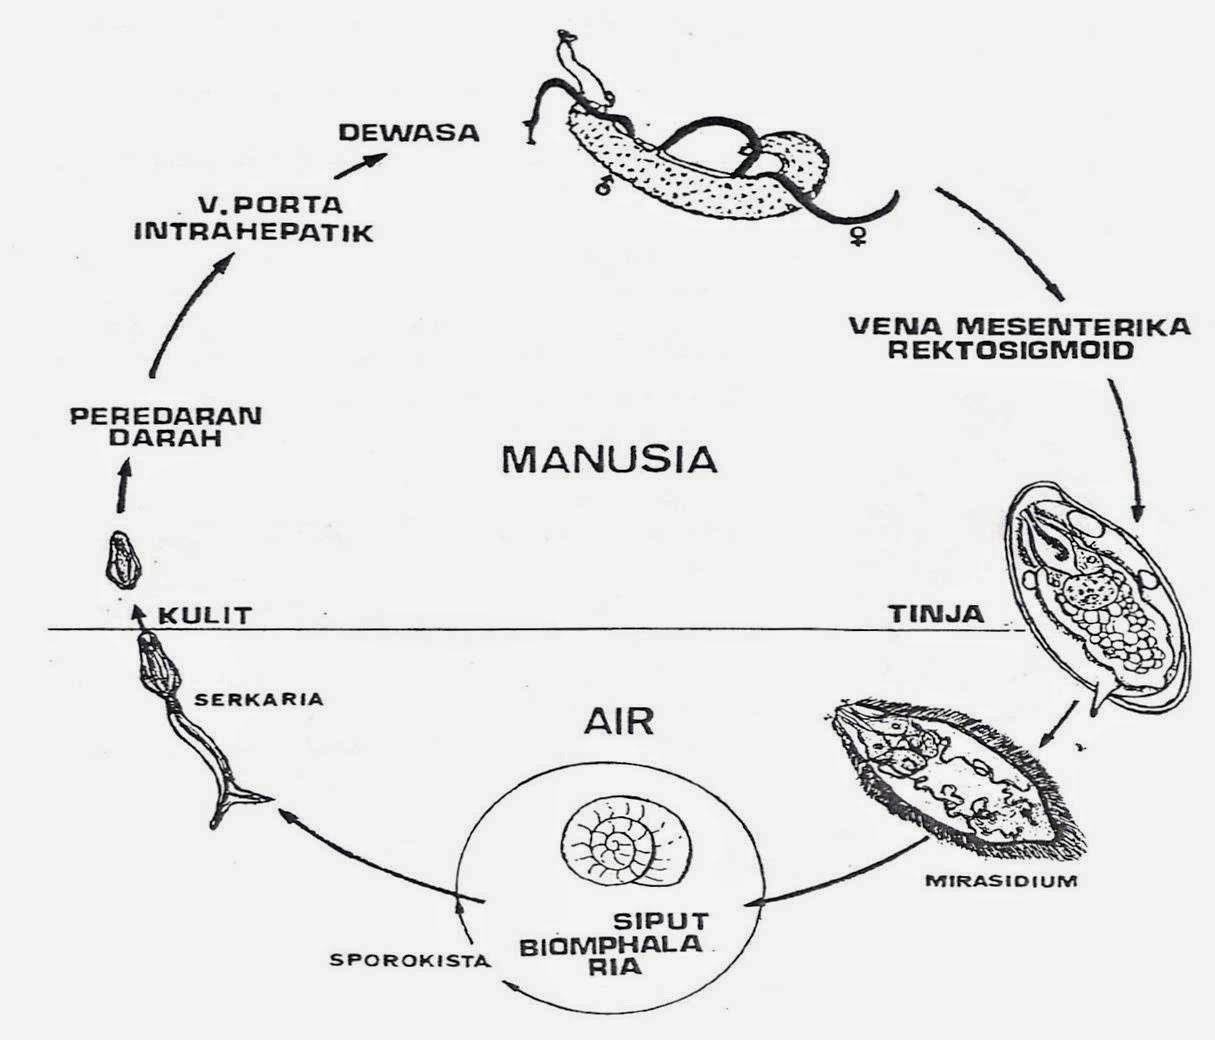 Жизненный цикл шистосомы. Schistosoma haematobium жизненный цикл. Шистосома цикл развития. Schistosoma mansoni жизненный цикл. Шистосома жизненный цикл схема.